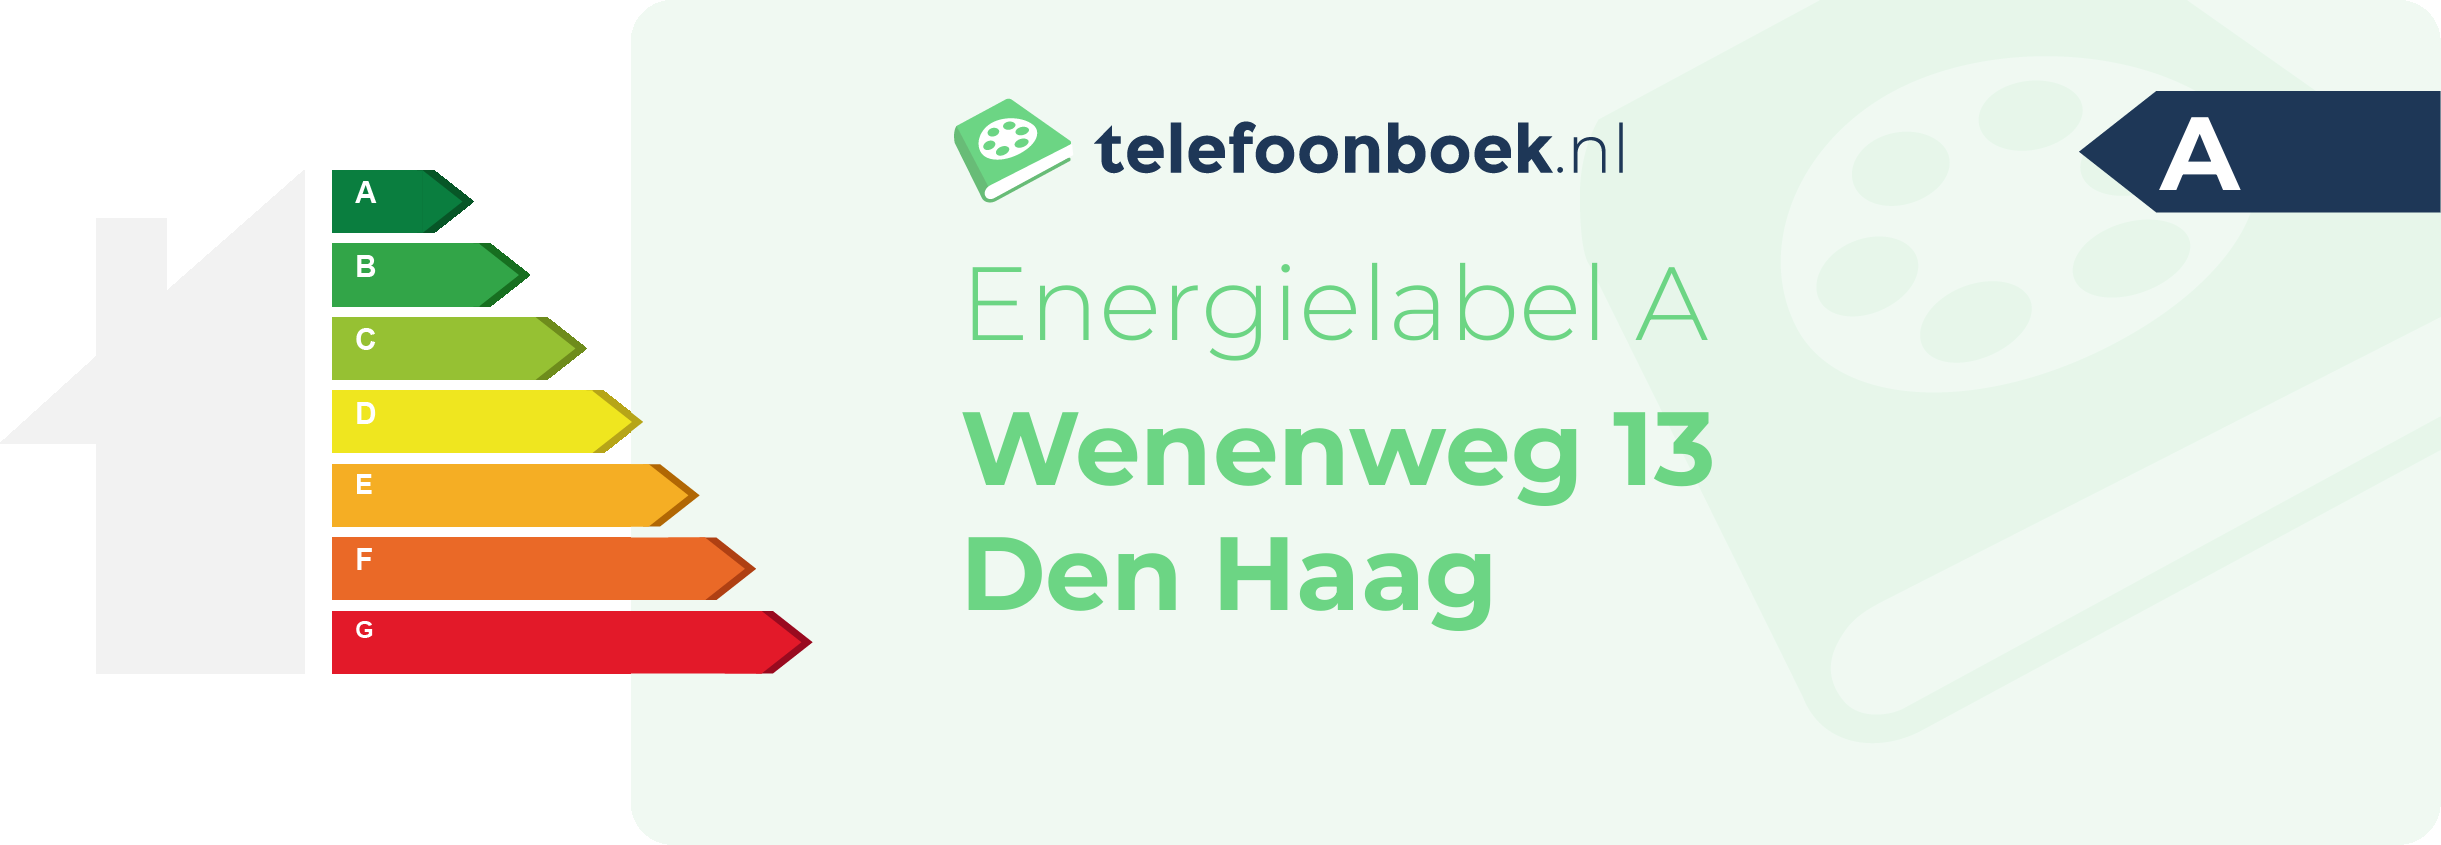 Energielabel Wenenweg 13 Den Haag